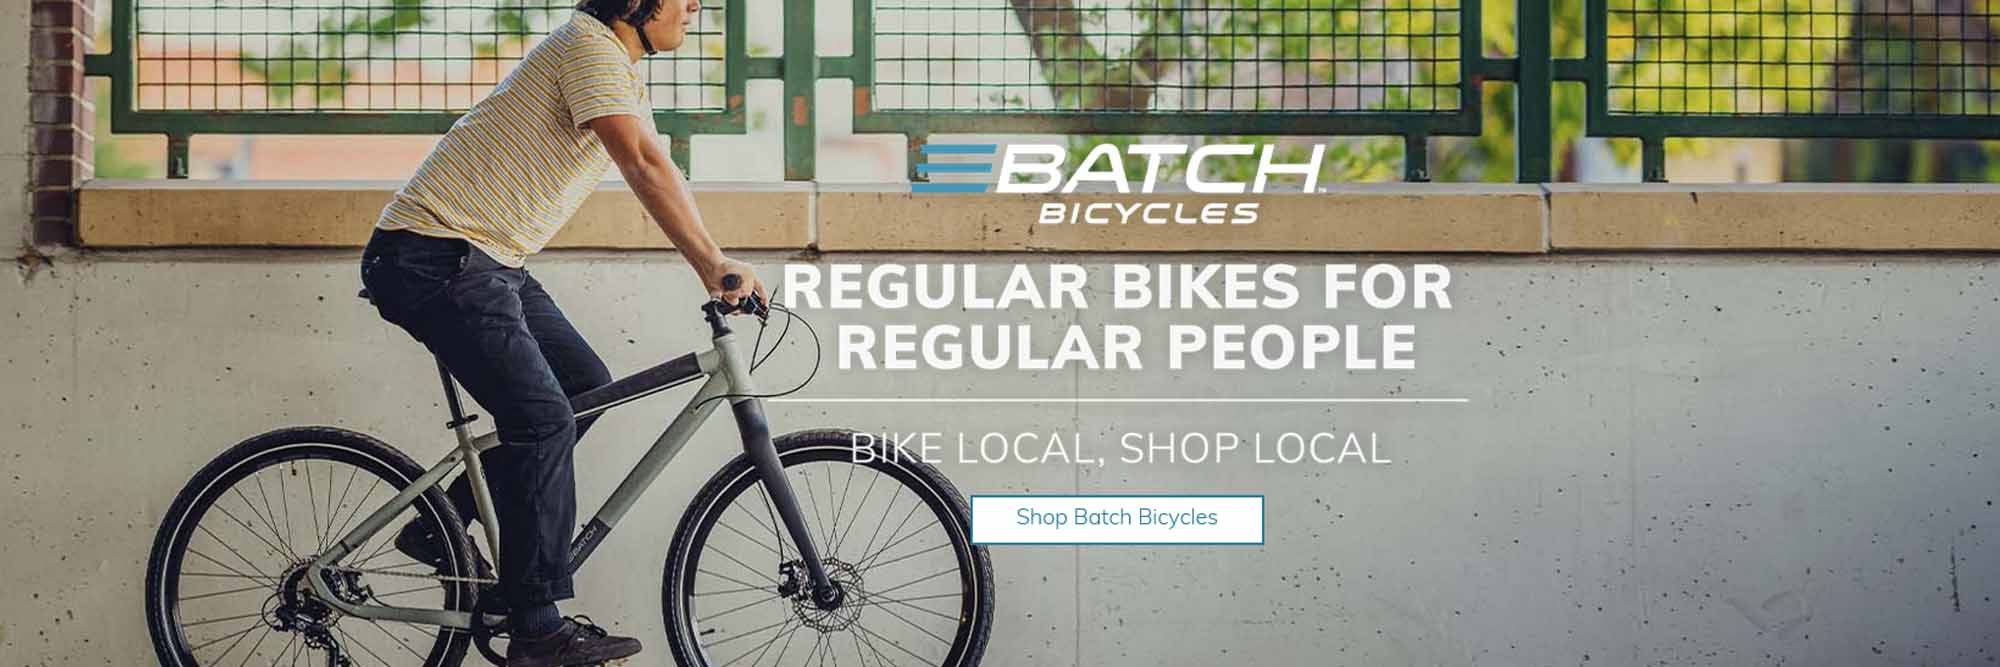 Batch Bikes for Regular Folks